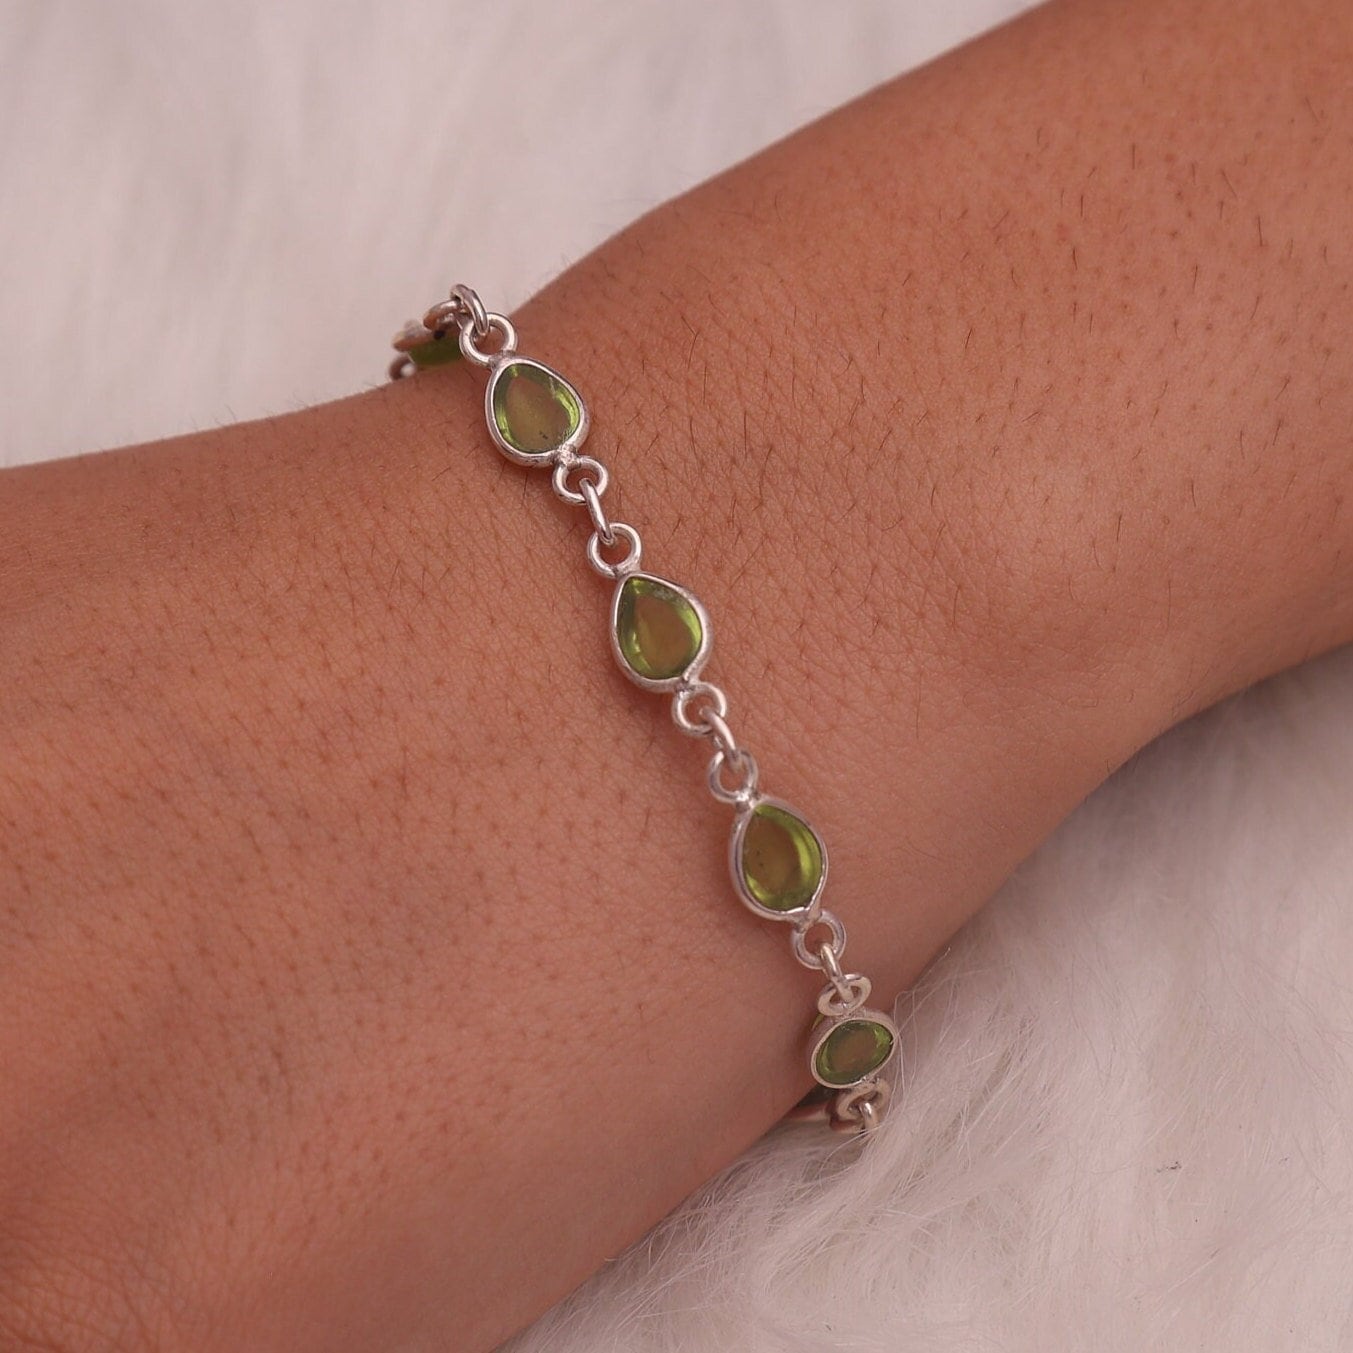 Peridot Bracelet, 925 Sterling Silver Bracelet, Green Gemstone Bracelet, August Birthstone Bracelet, Adjustable Jewelry, Handmade Bracelet